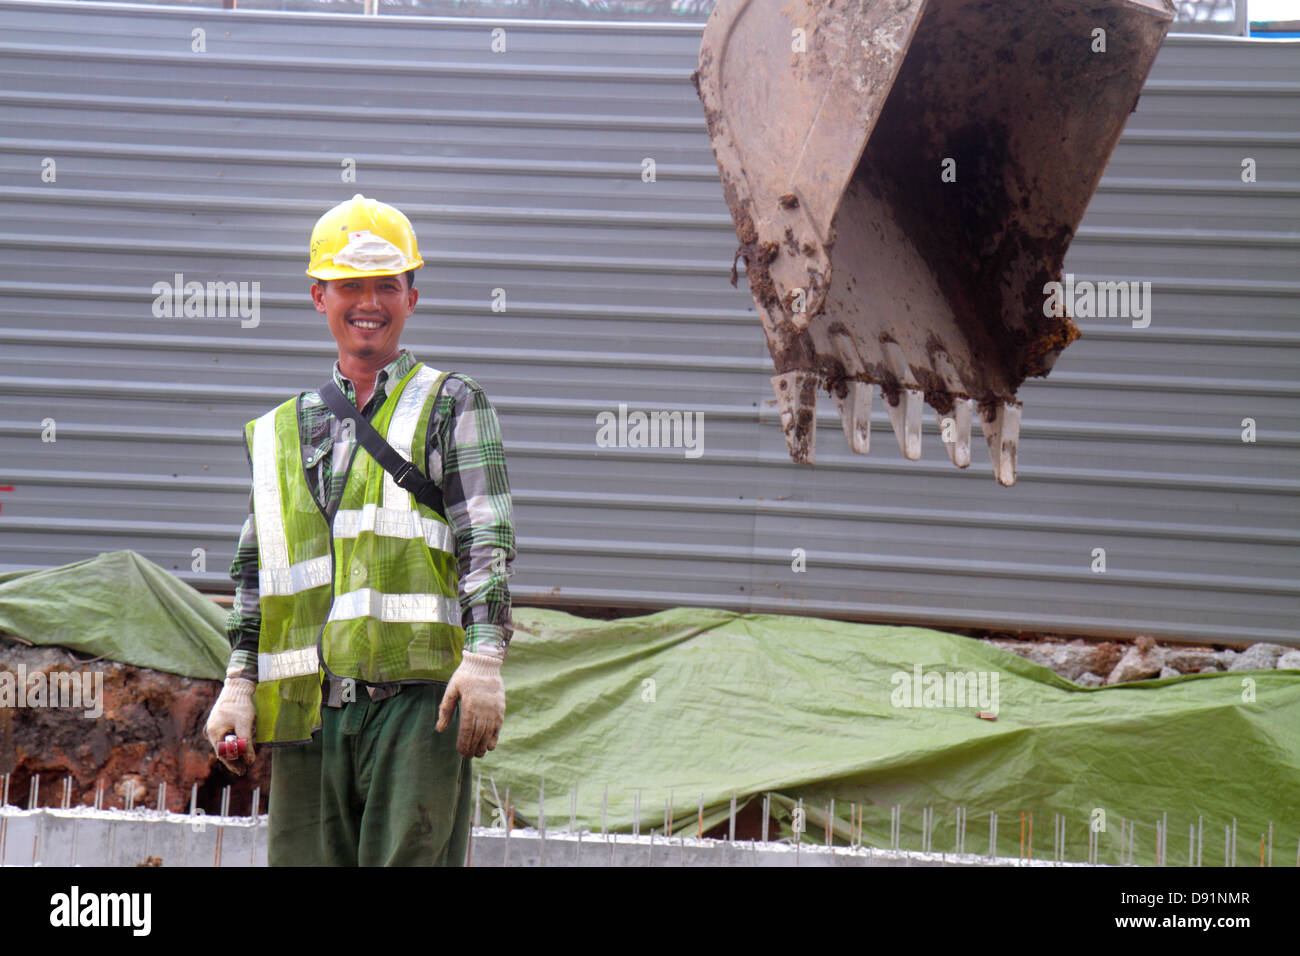 Singapour Jalan Besar,homme asiatique hommes,casque,sous un nouveau chantier de construction constructeur,travailleur,travailleurs,bâtiment,chantier,pelle,travail,travail,travail,si Banque D'Images